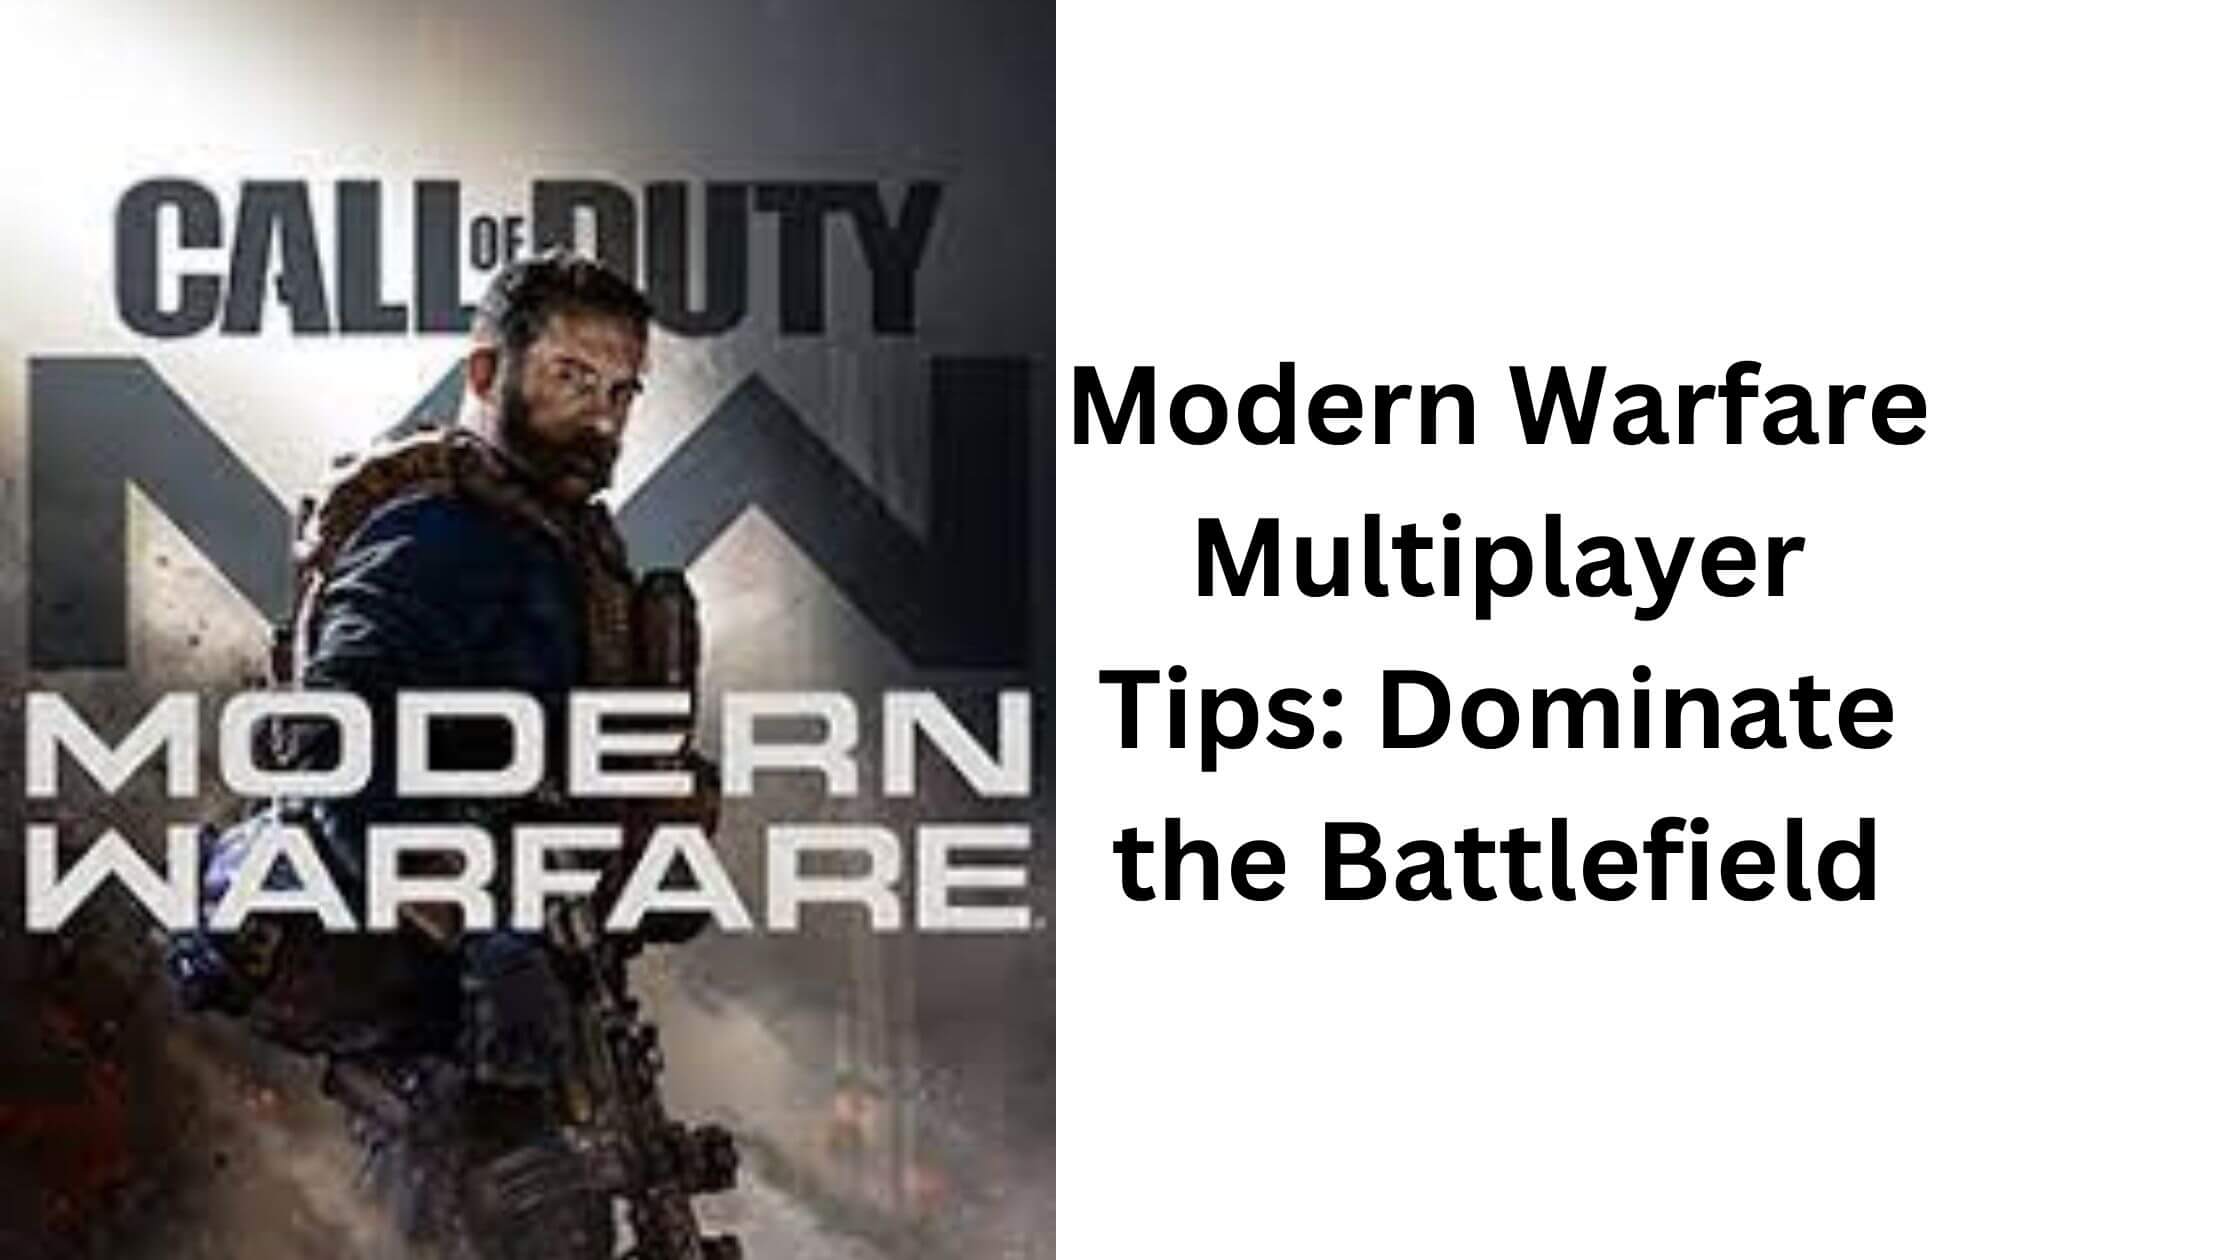 Modern Warfare Multiplayer Tips